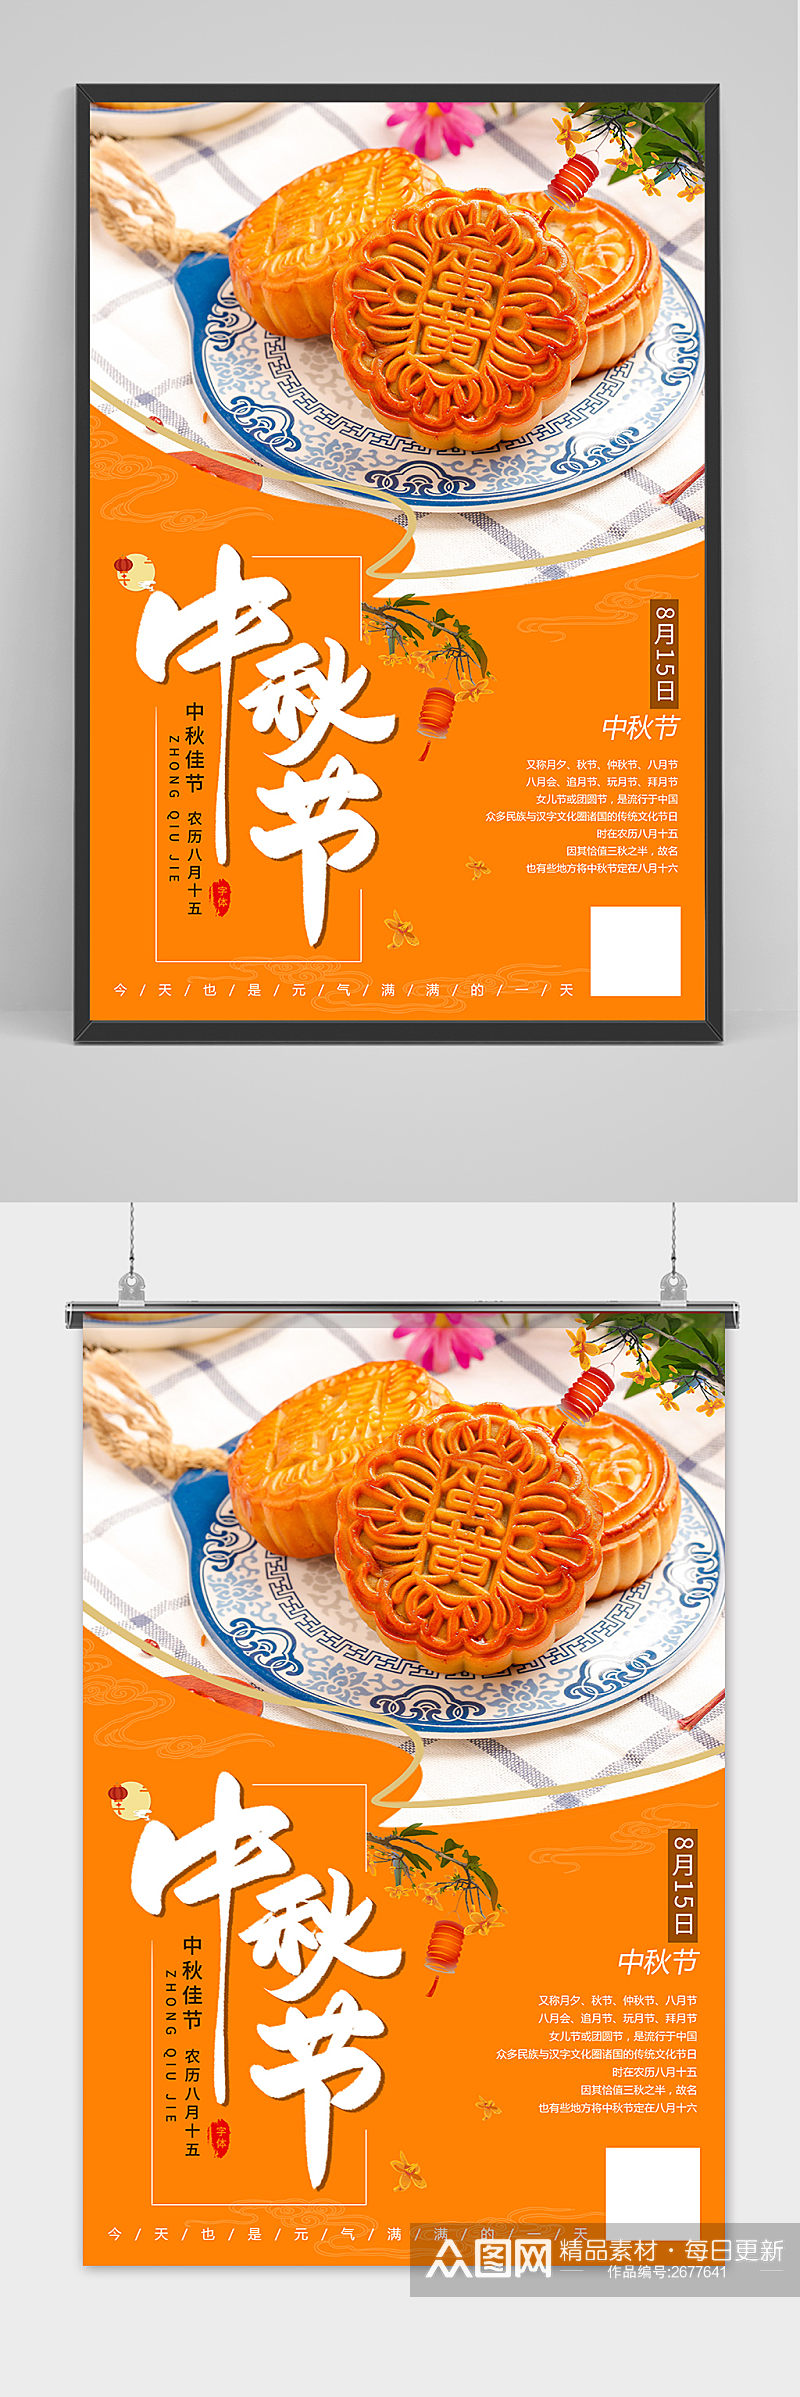 创意清新传统中国风中秋节海报素材